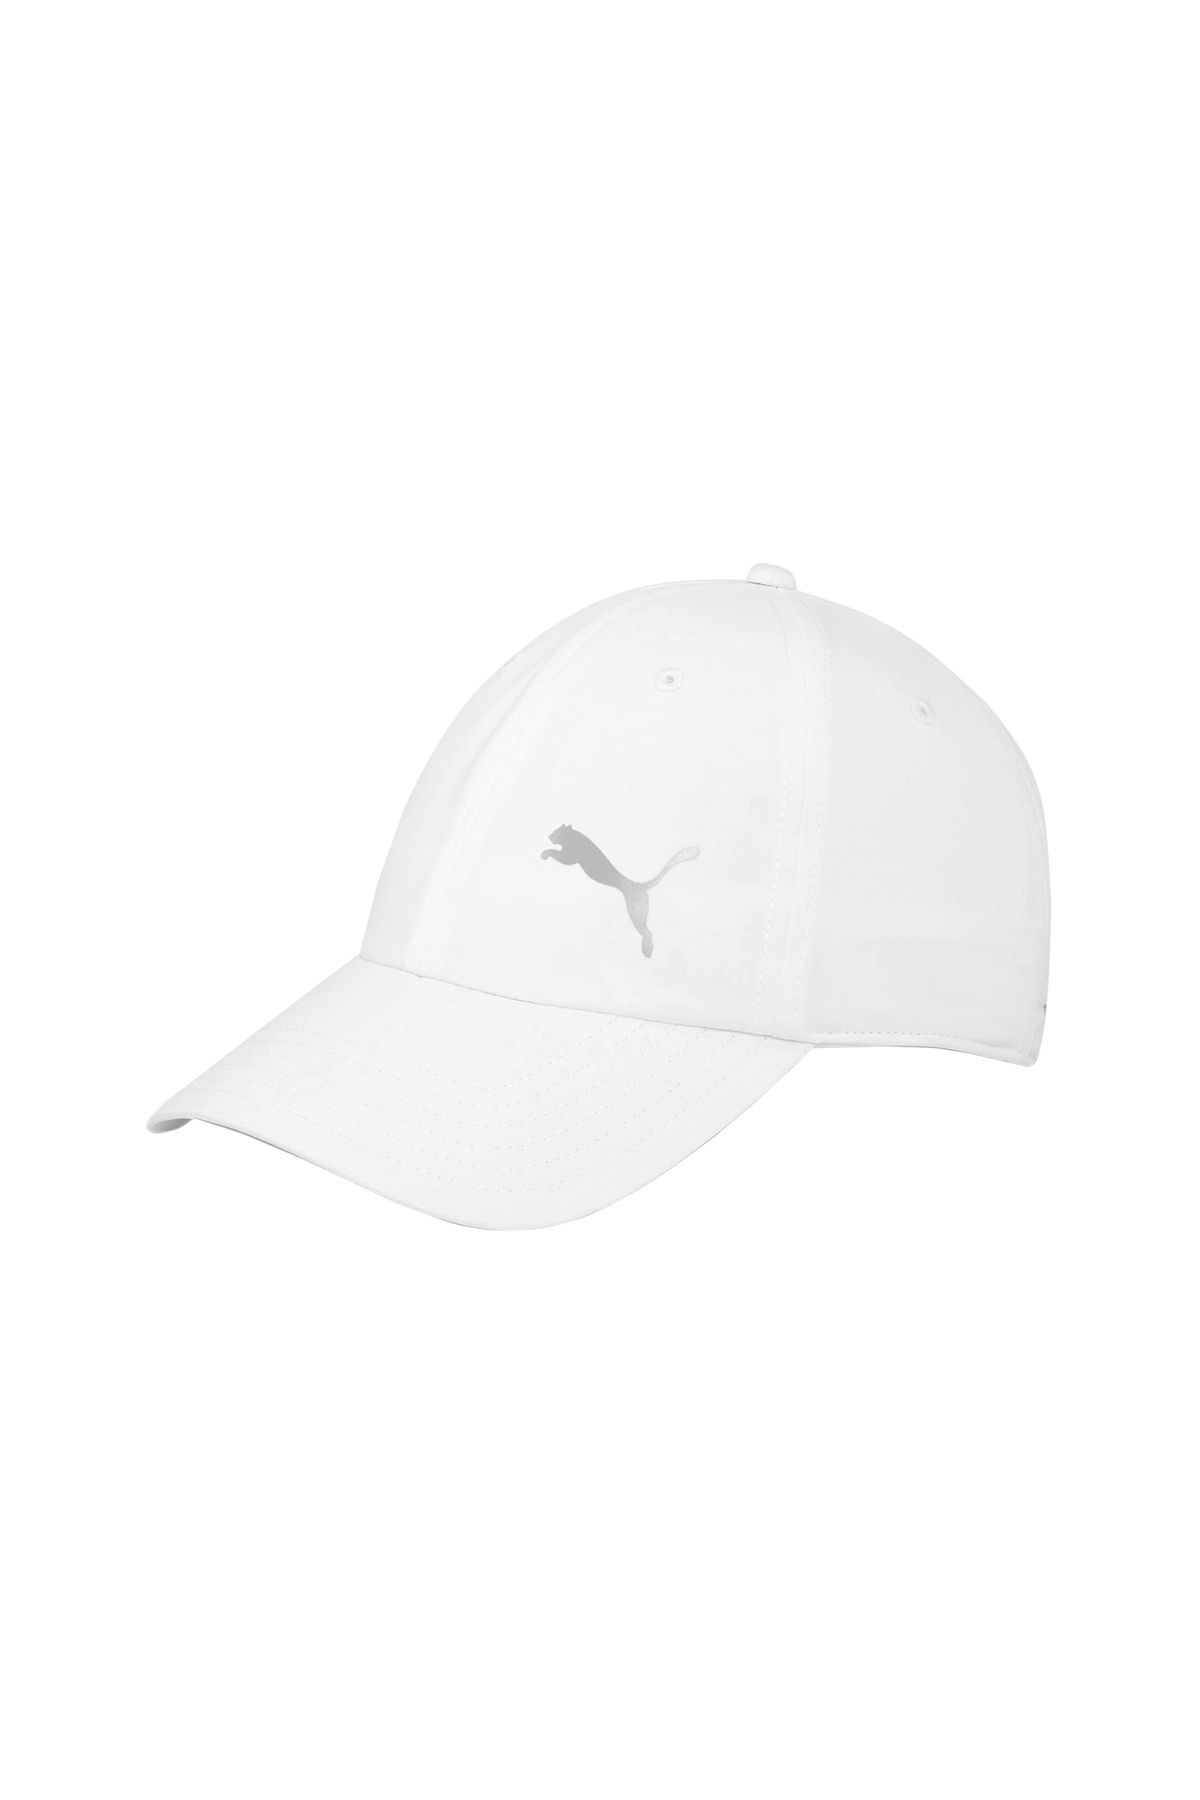 Puma Günlük Kullanıma Uygun Spor Şapka Renkli